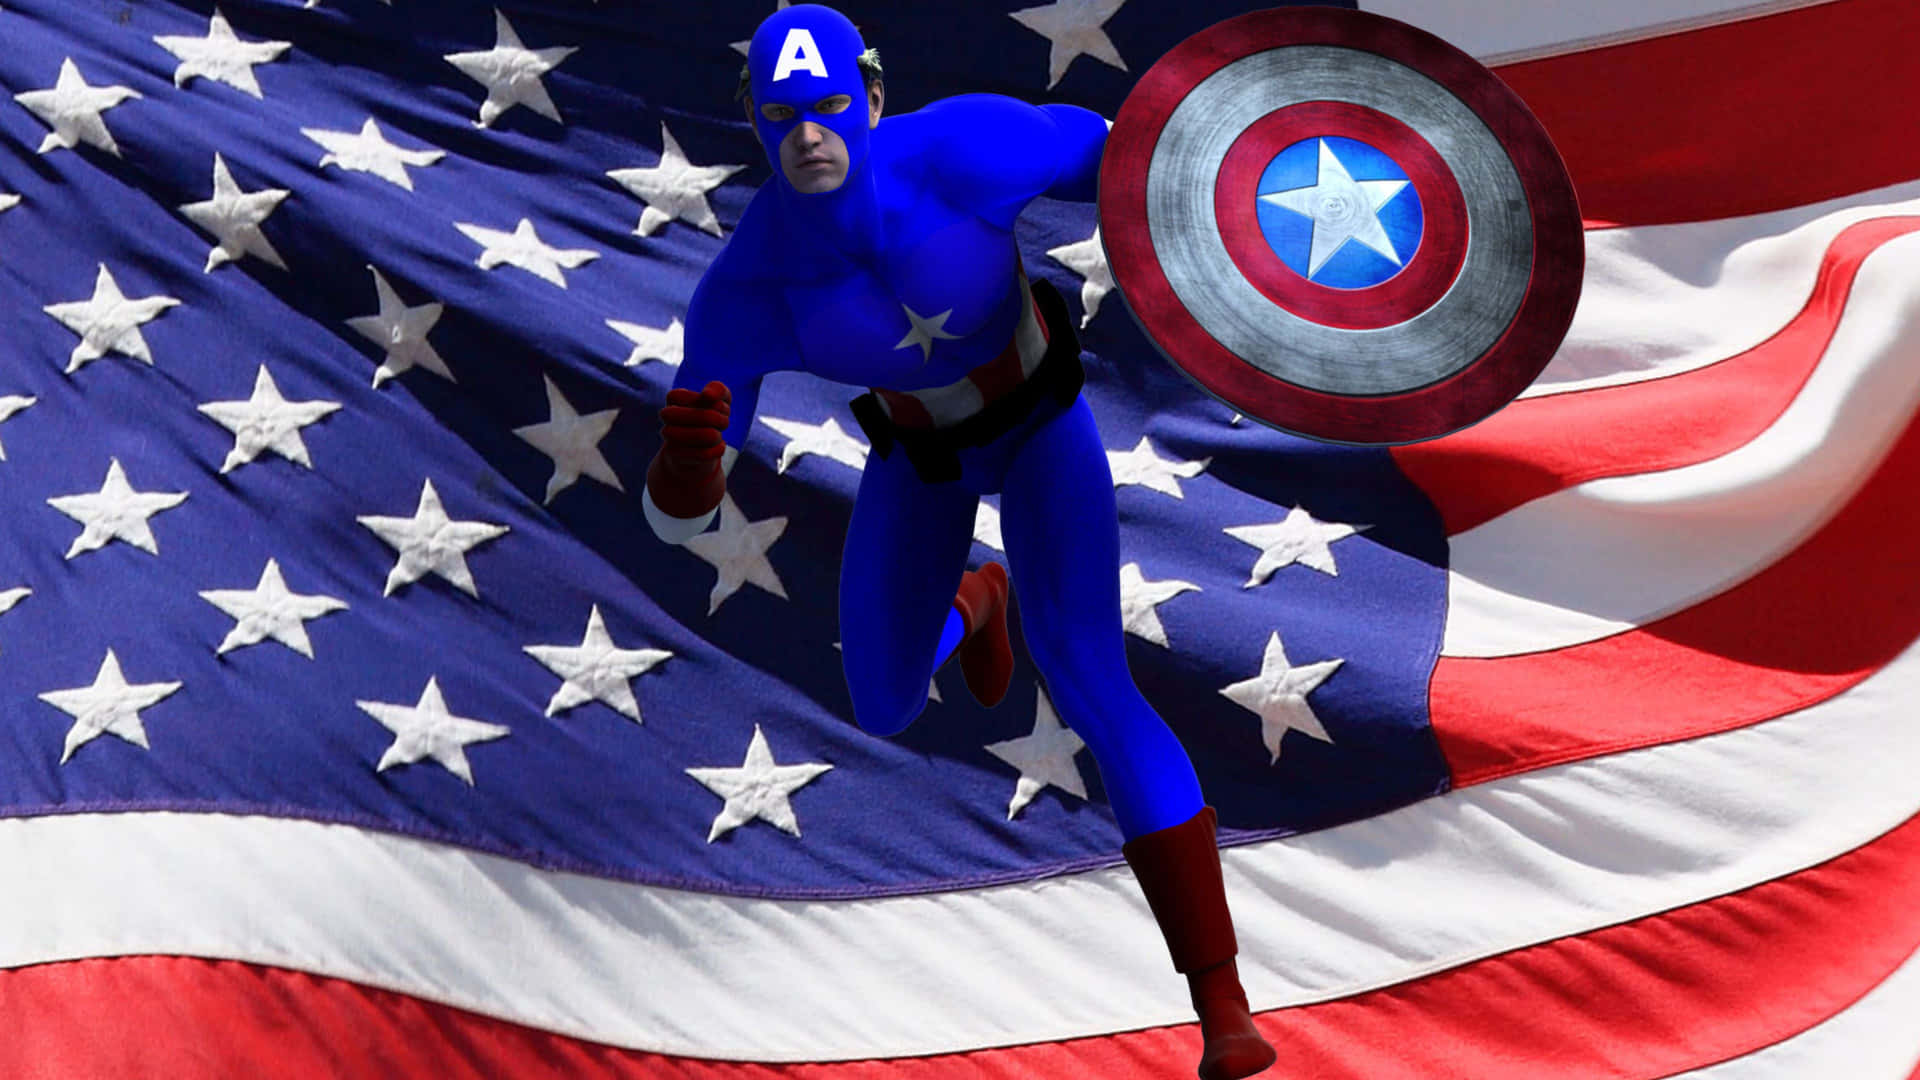 Denheroiska Captain America I En Ikonisk Fightscen